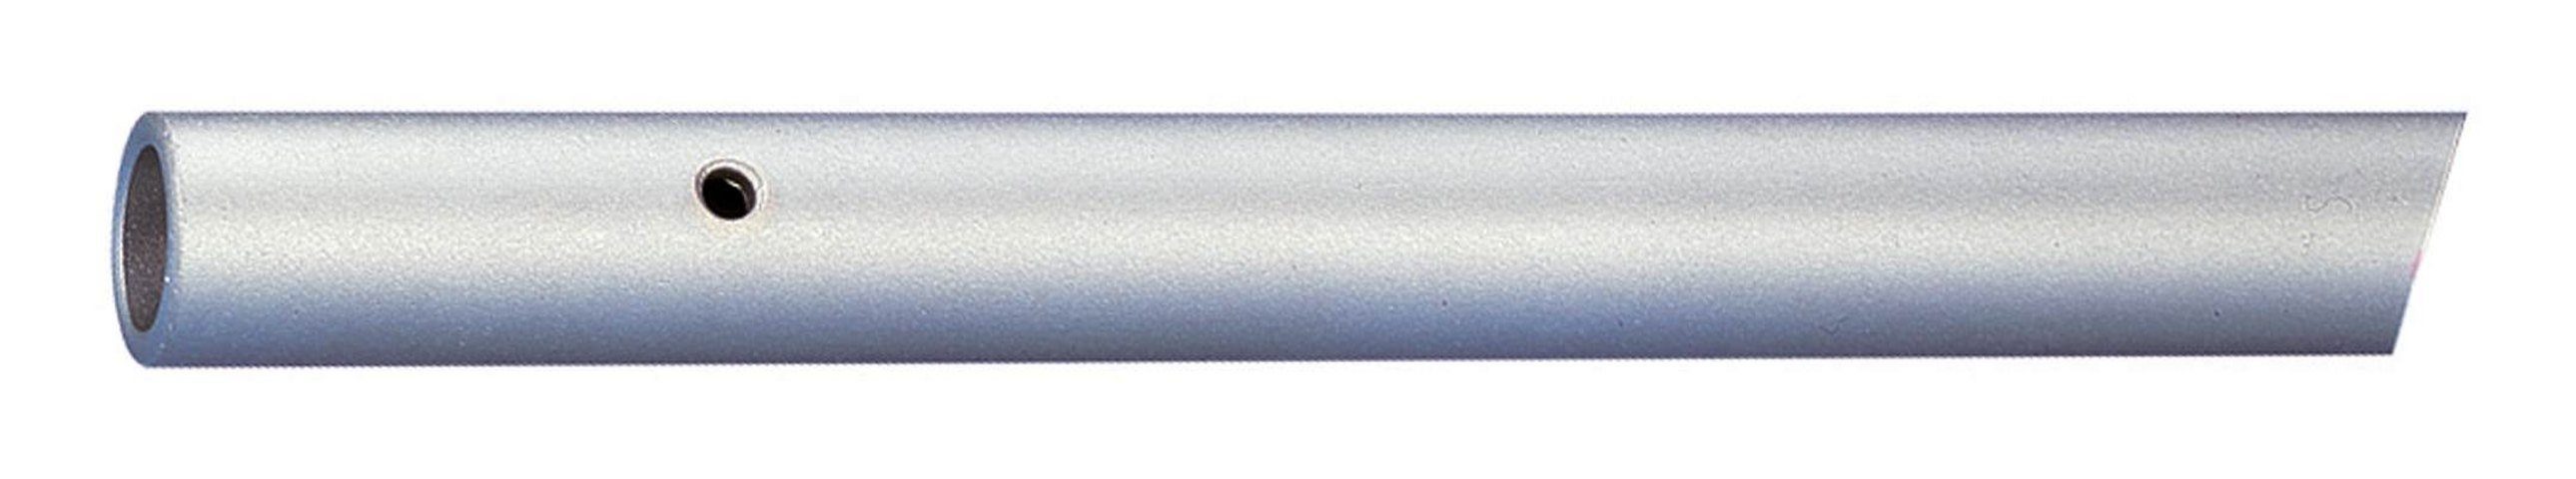 Gedore Ringschlüssel, Rohr für Zugringschlüssel 30 x 860 mm